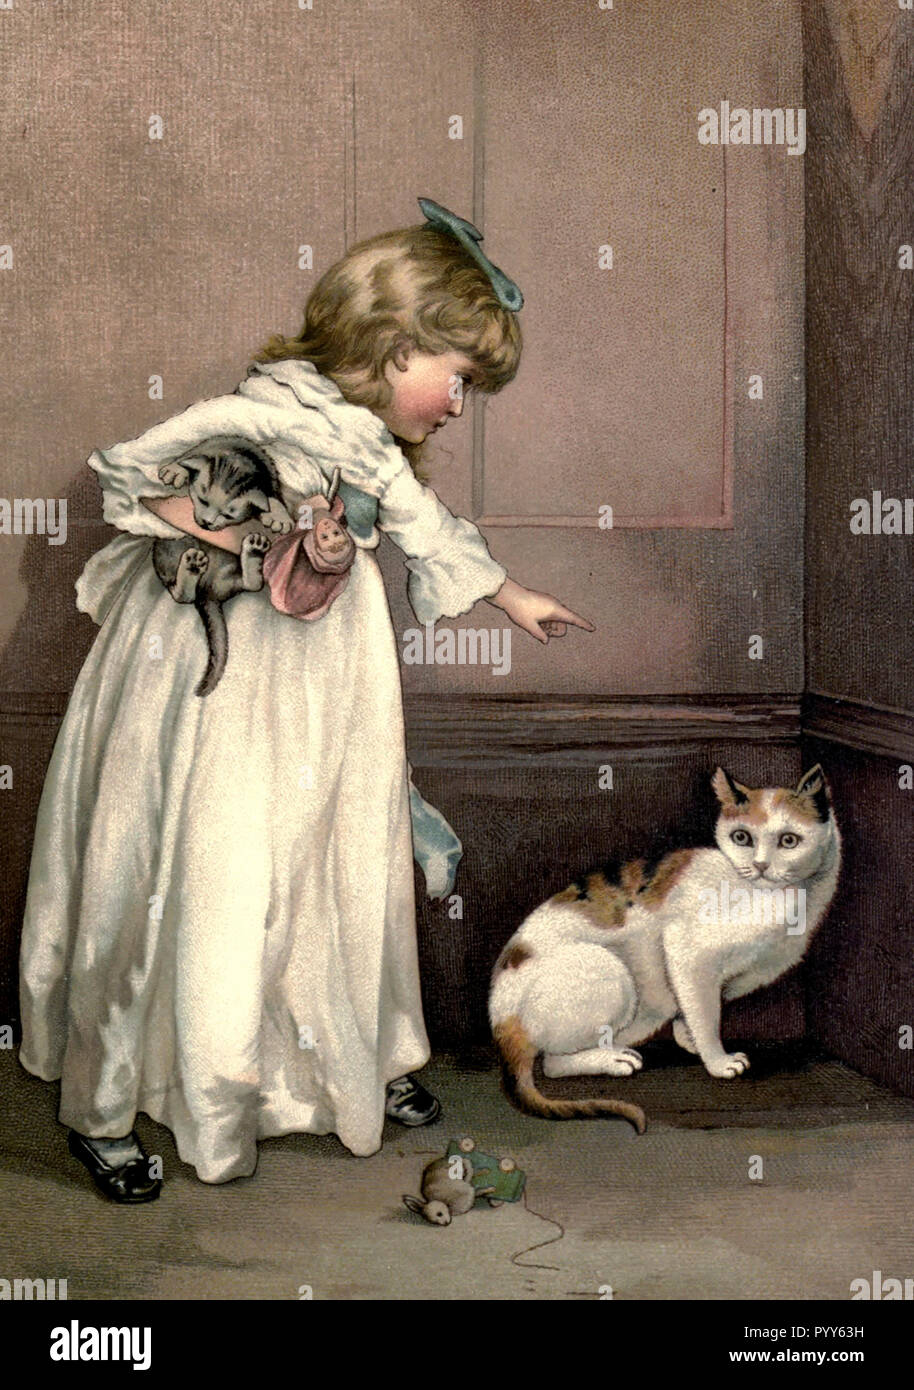 Una niña ordena un gato en la esquina durante la época victoriana Foto de stock